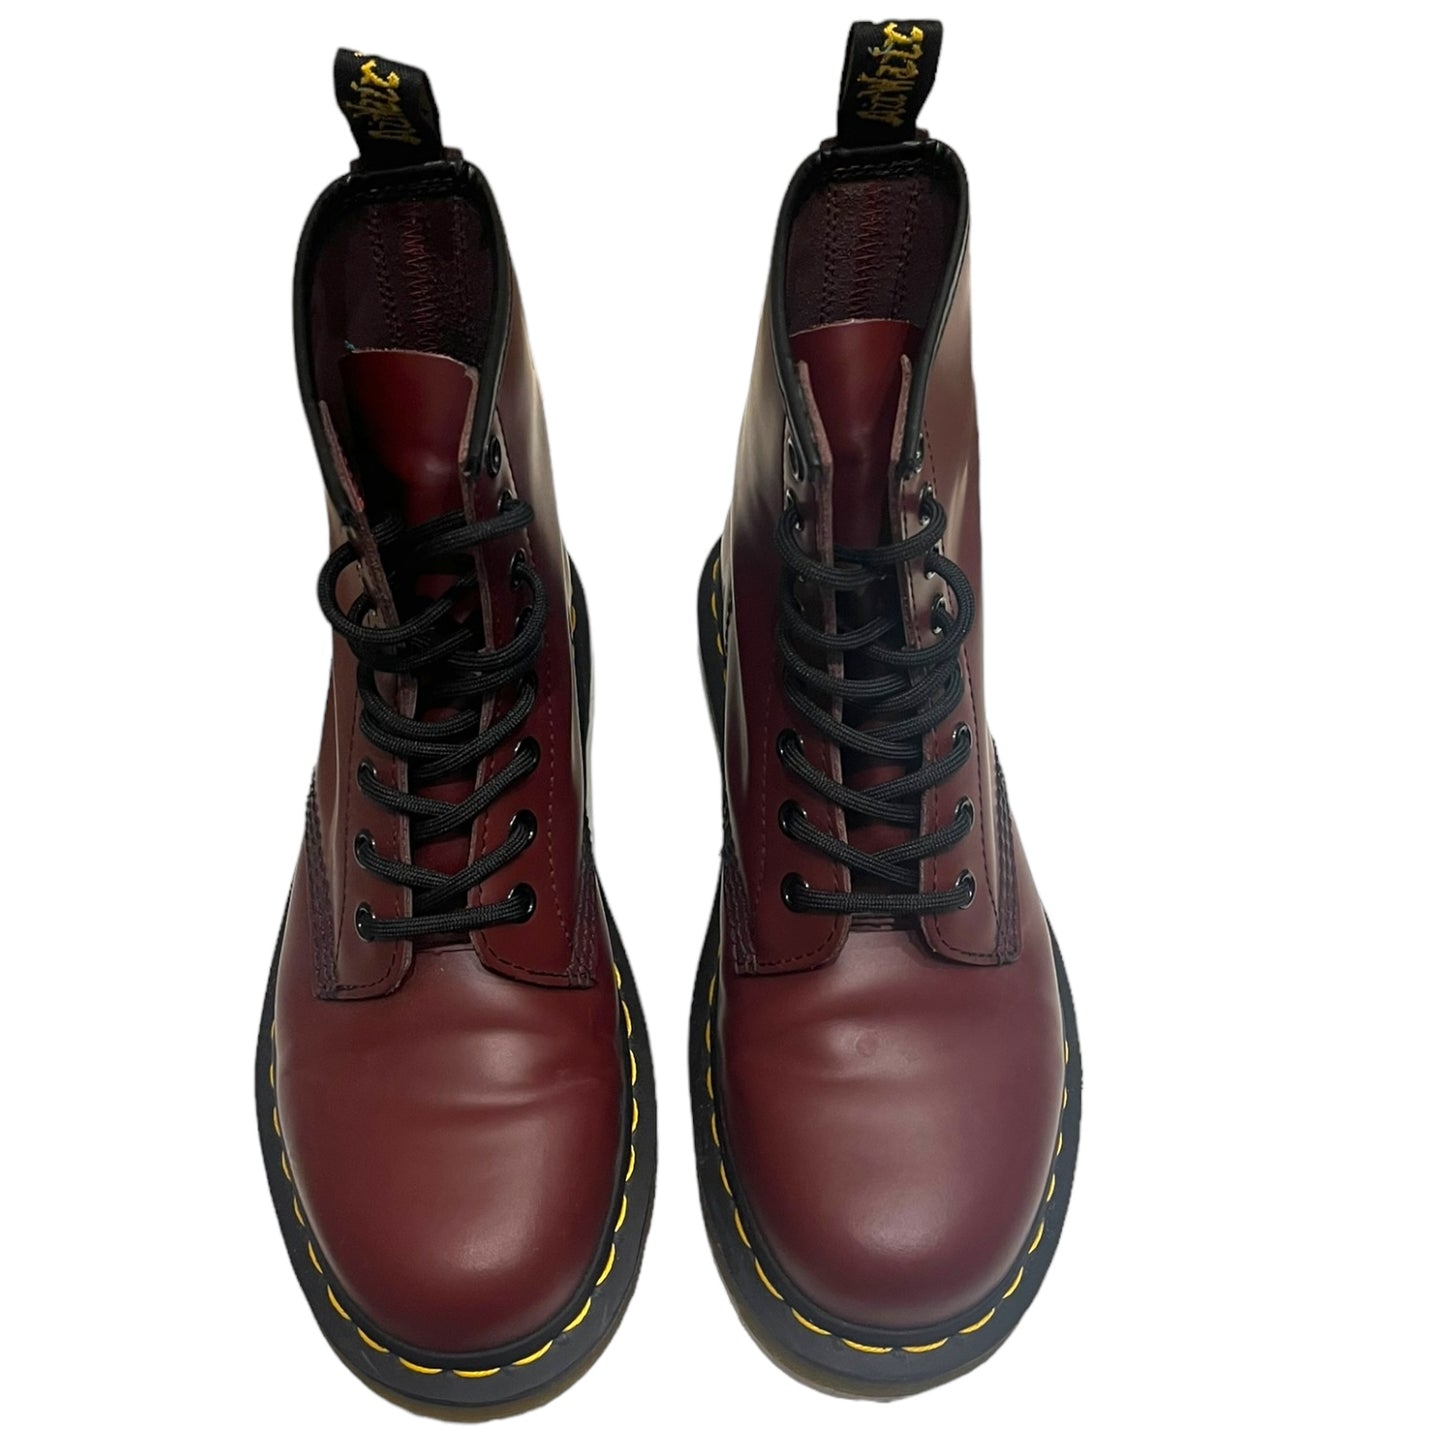 Dr Martens Burgundy Boots - 4